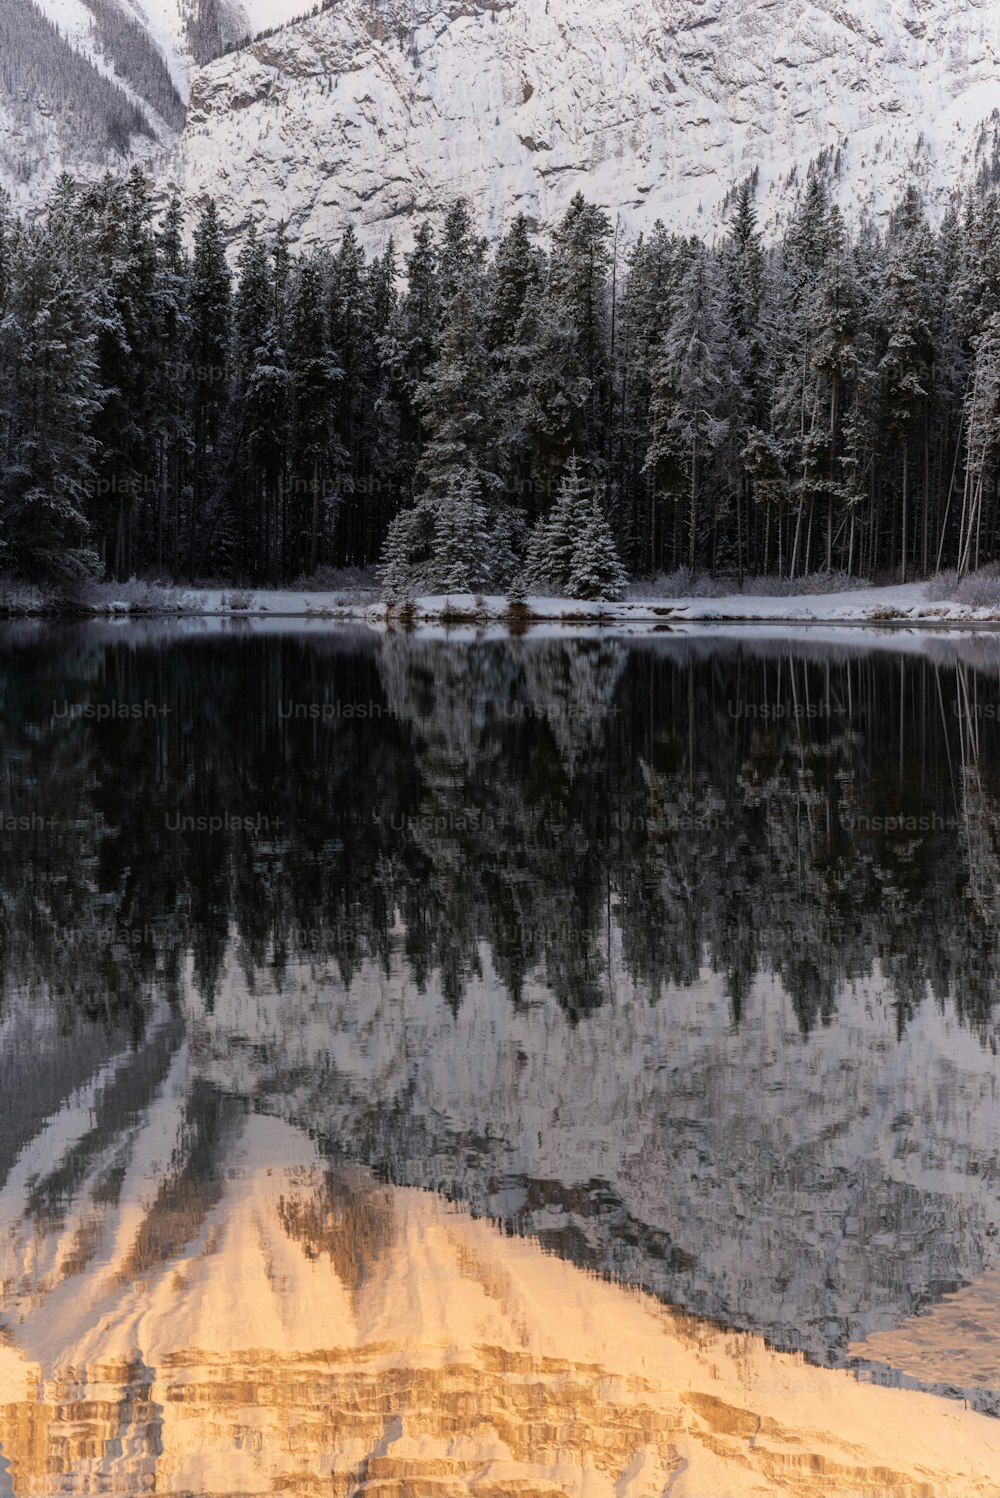 Un lago circondato da neve e alberi